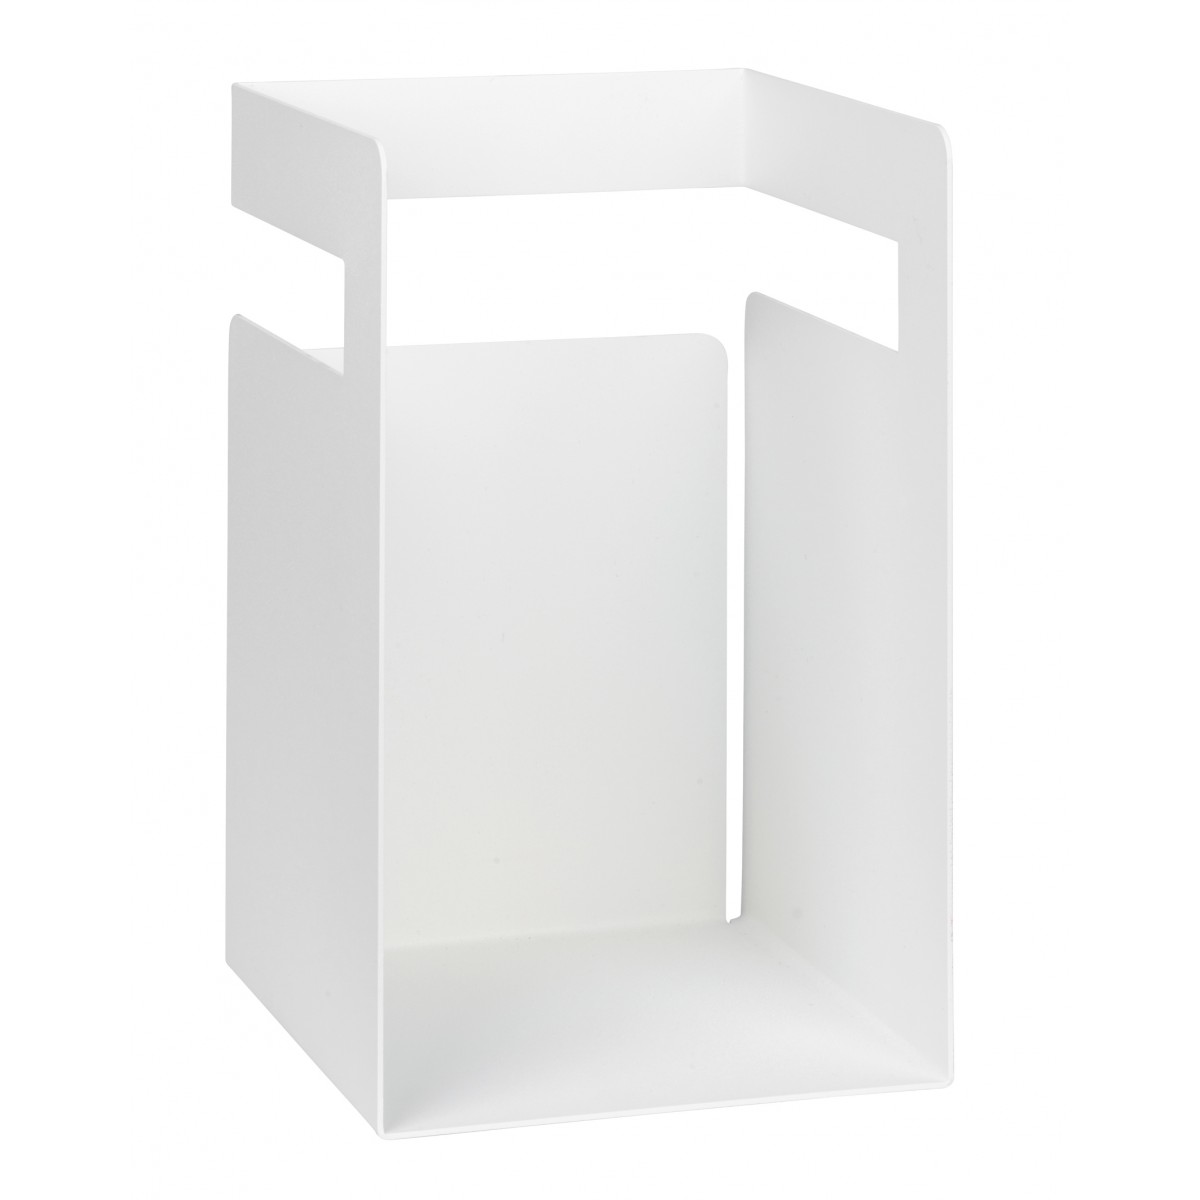 myform productdesign ele.Box (Schreibtischaufbewahrung, Einhängesystem, Multifunktionselement)